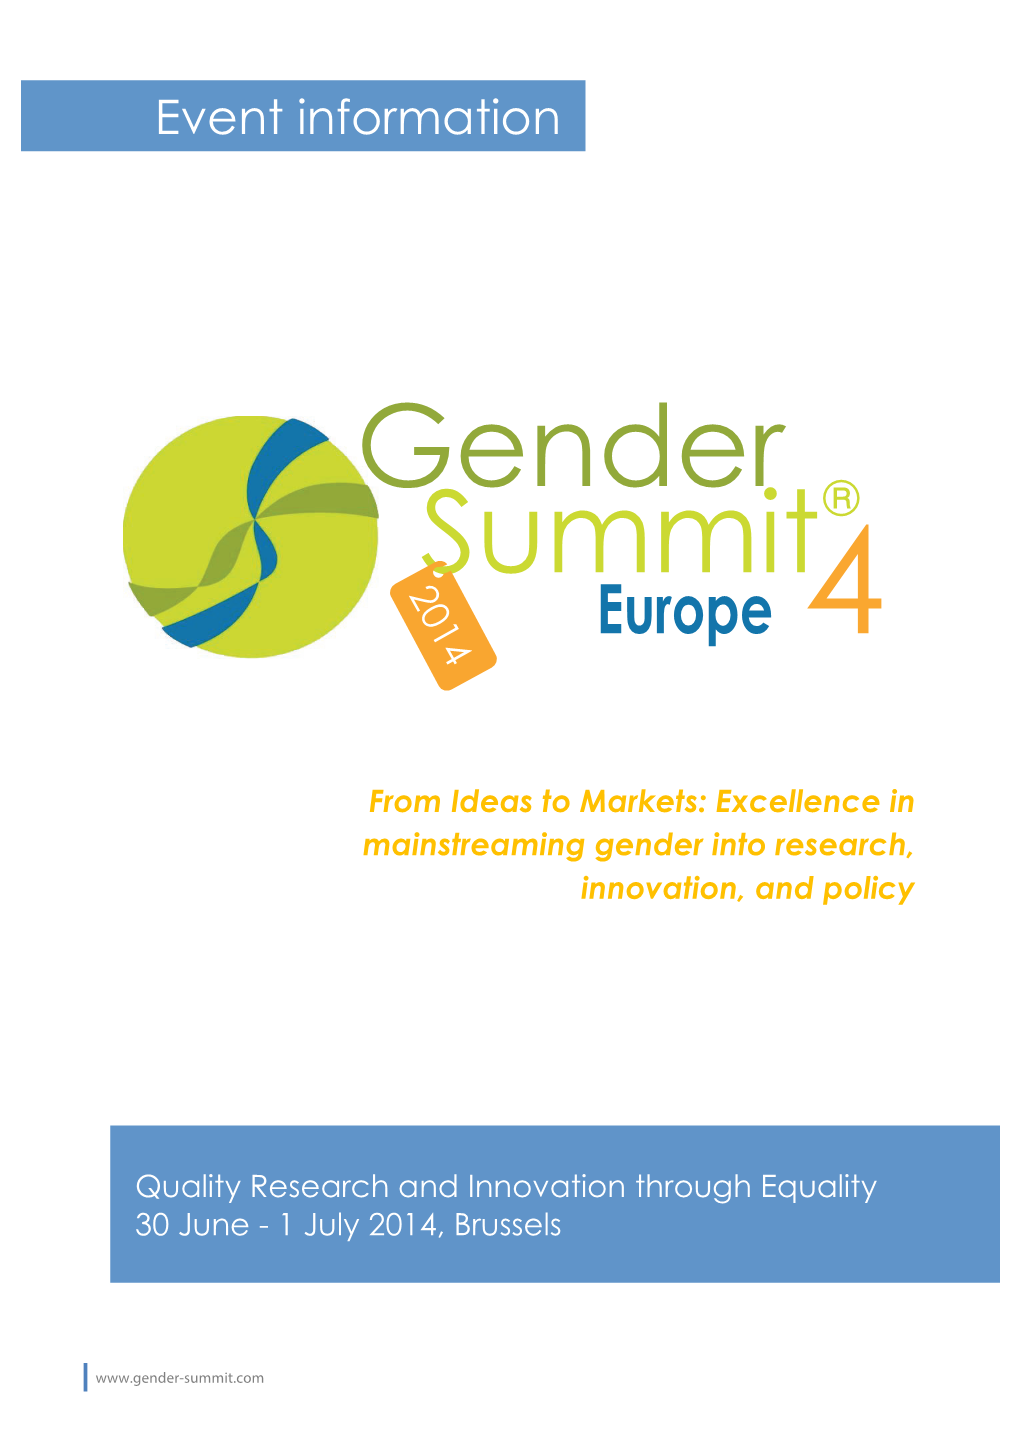 Gender Summit® 2014 Europe 4